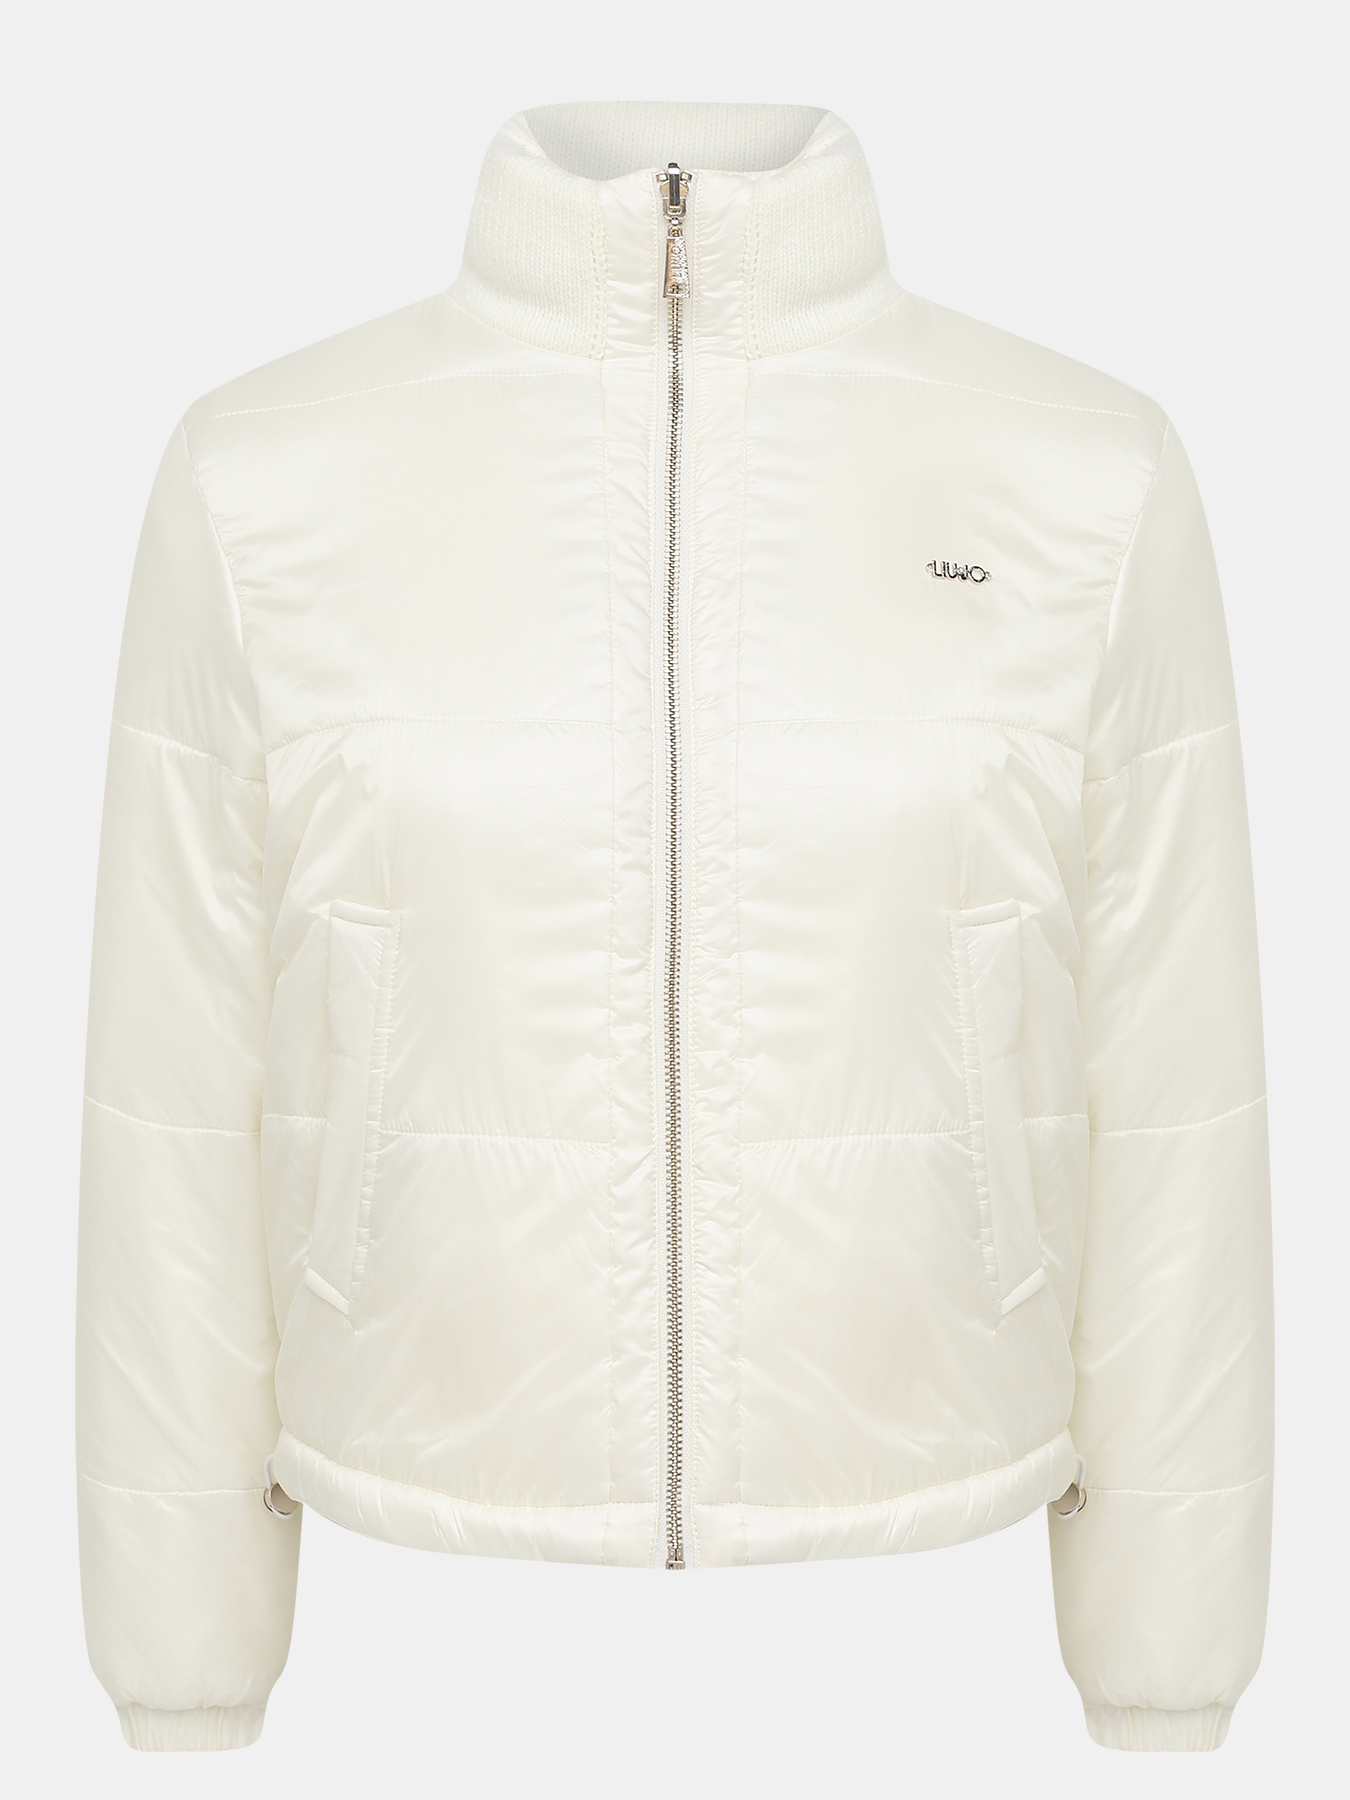 Двусторонняя куртка Liu Jo Sport 414790-043, цвет молочный, размер 44-46